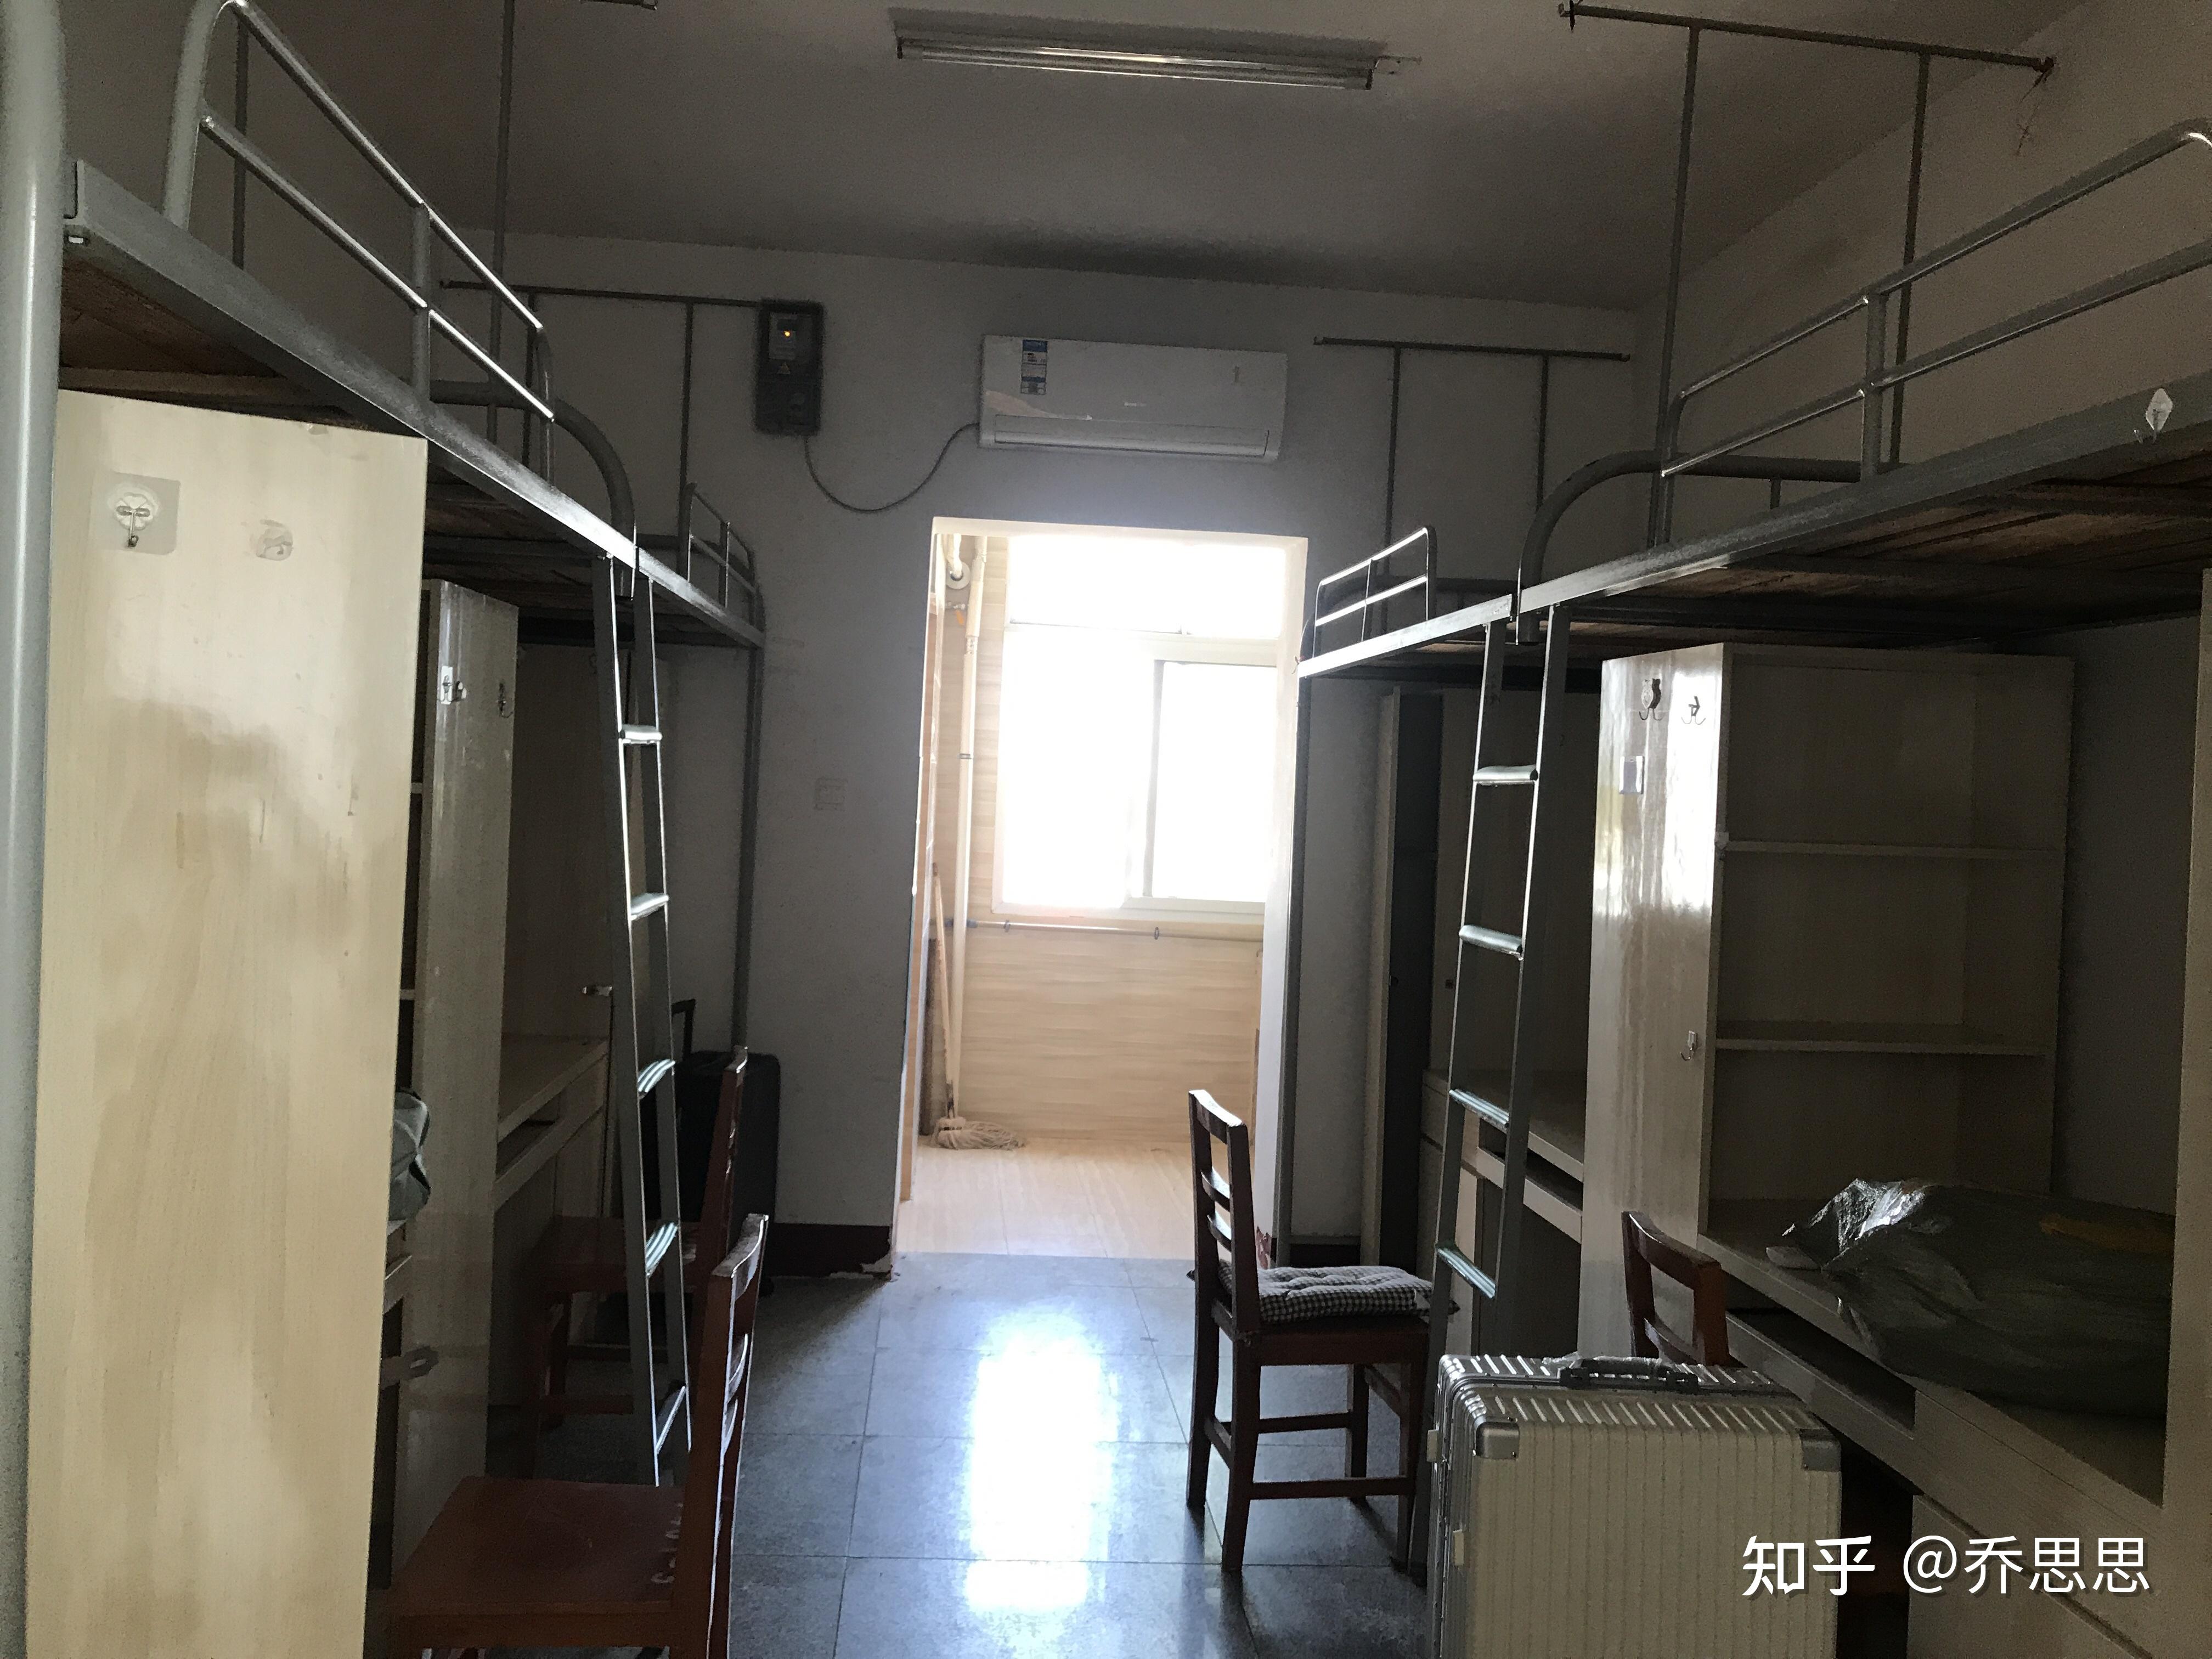 江汉艺术职业学院的宿舍条件如何?校区内有哪些生活设施? 